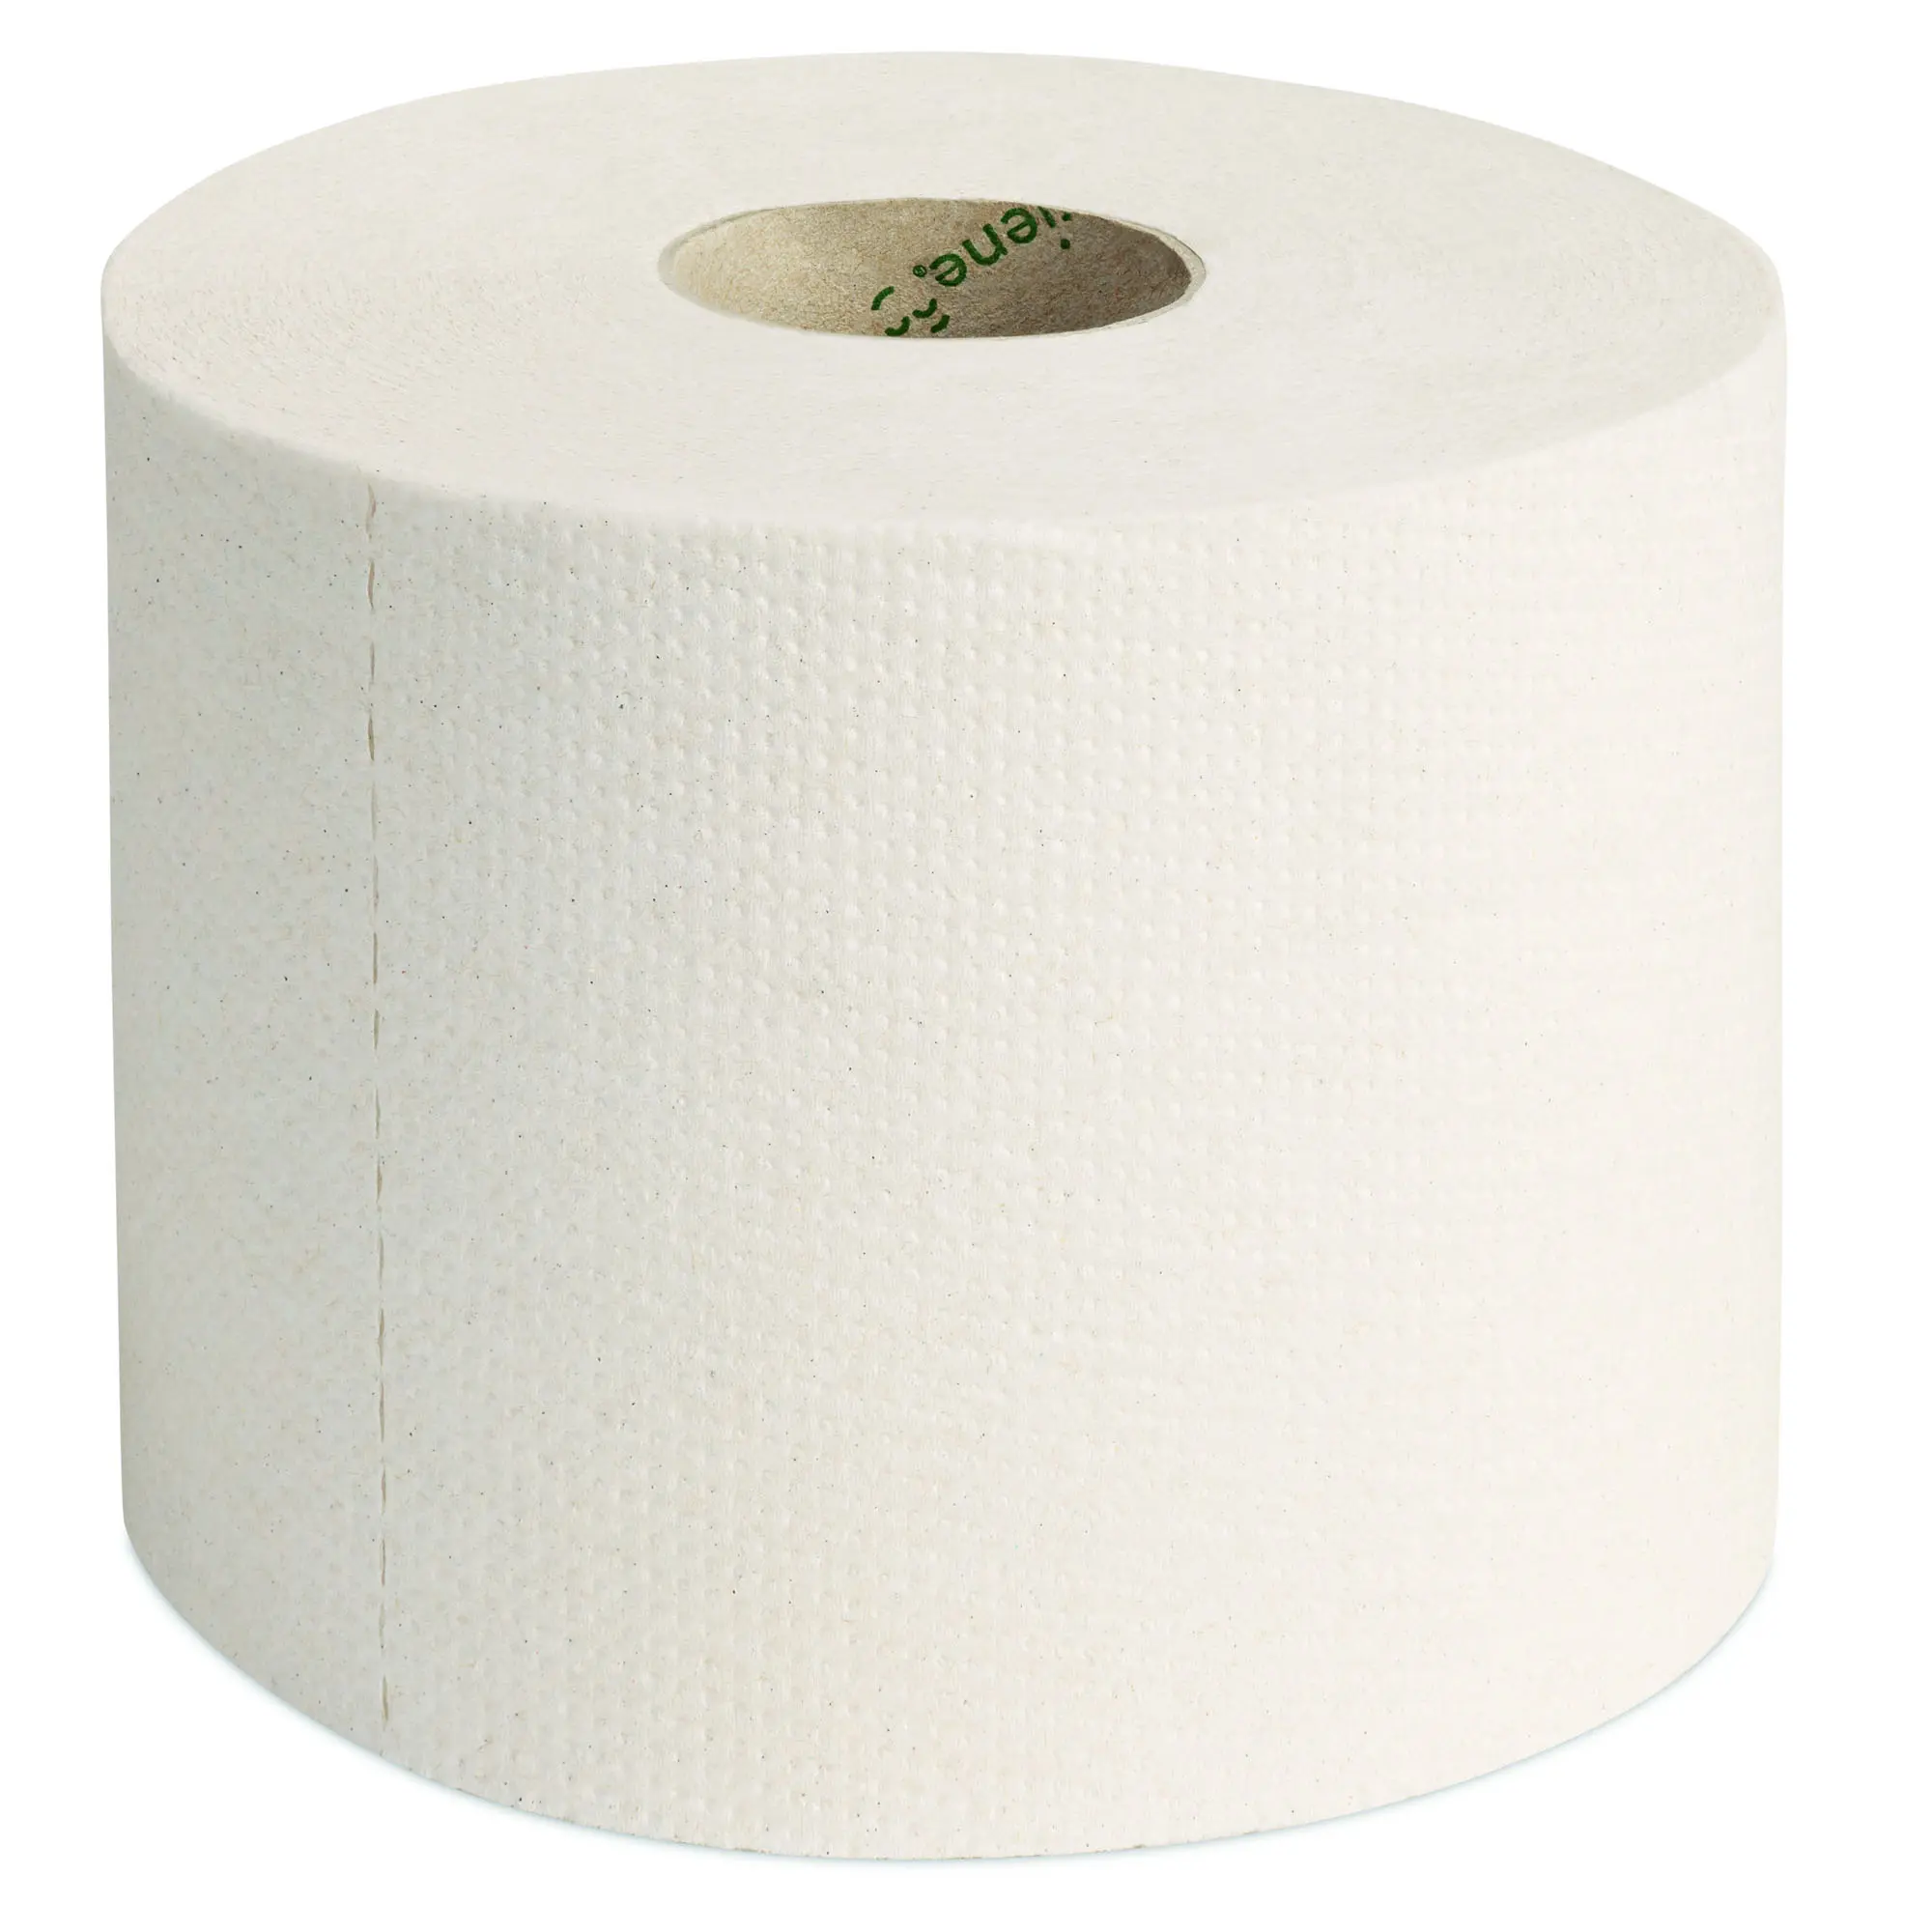 Green Hygiene ROLF Toilettenpapier Kleinrolle 2-lagig, 500 Blatt